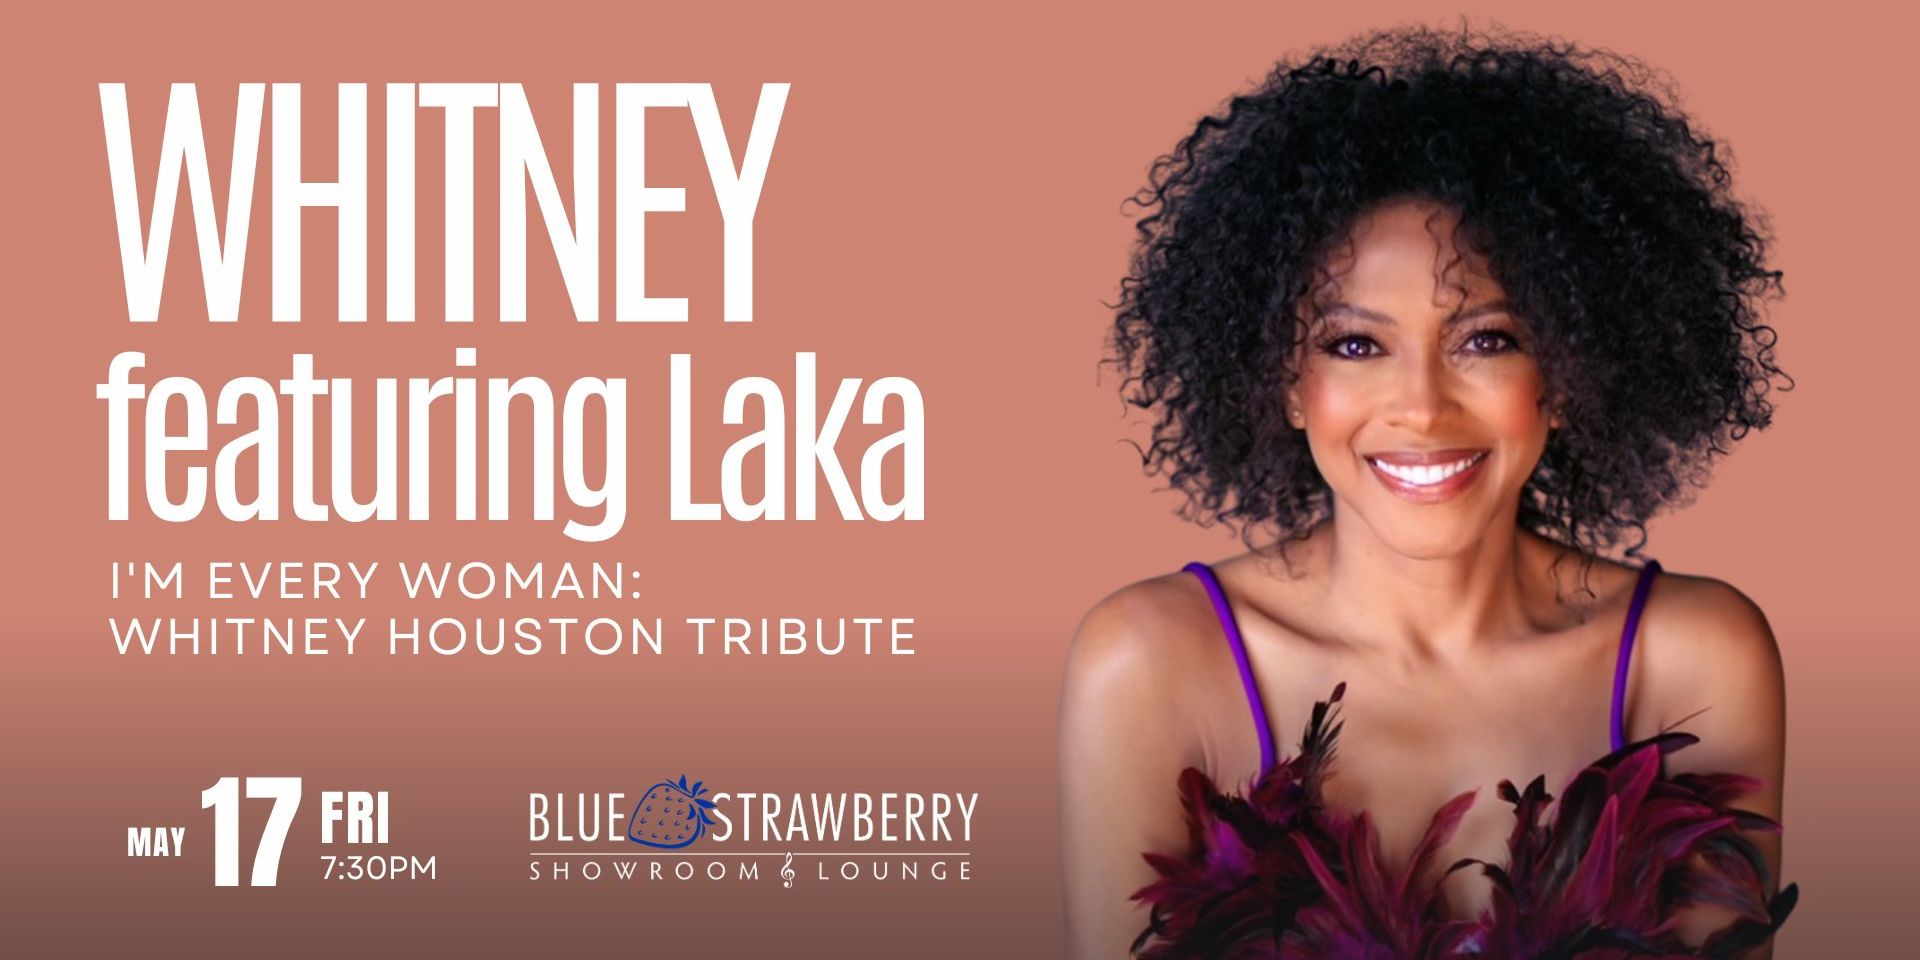 WHITNEY Featuring Laka I'm Every Woman: Whitney Houston Tribute promotional image